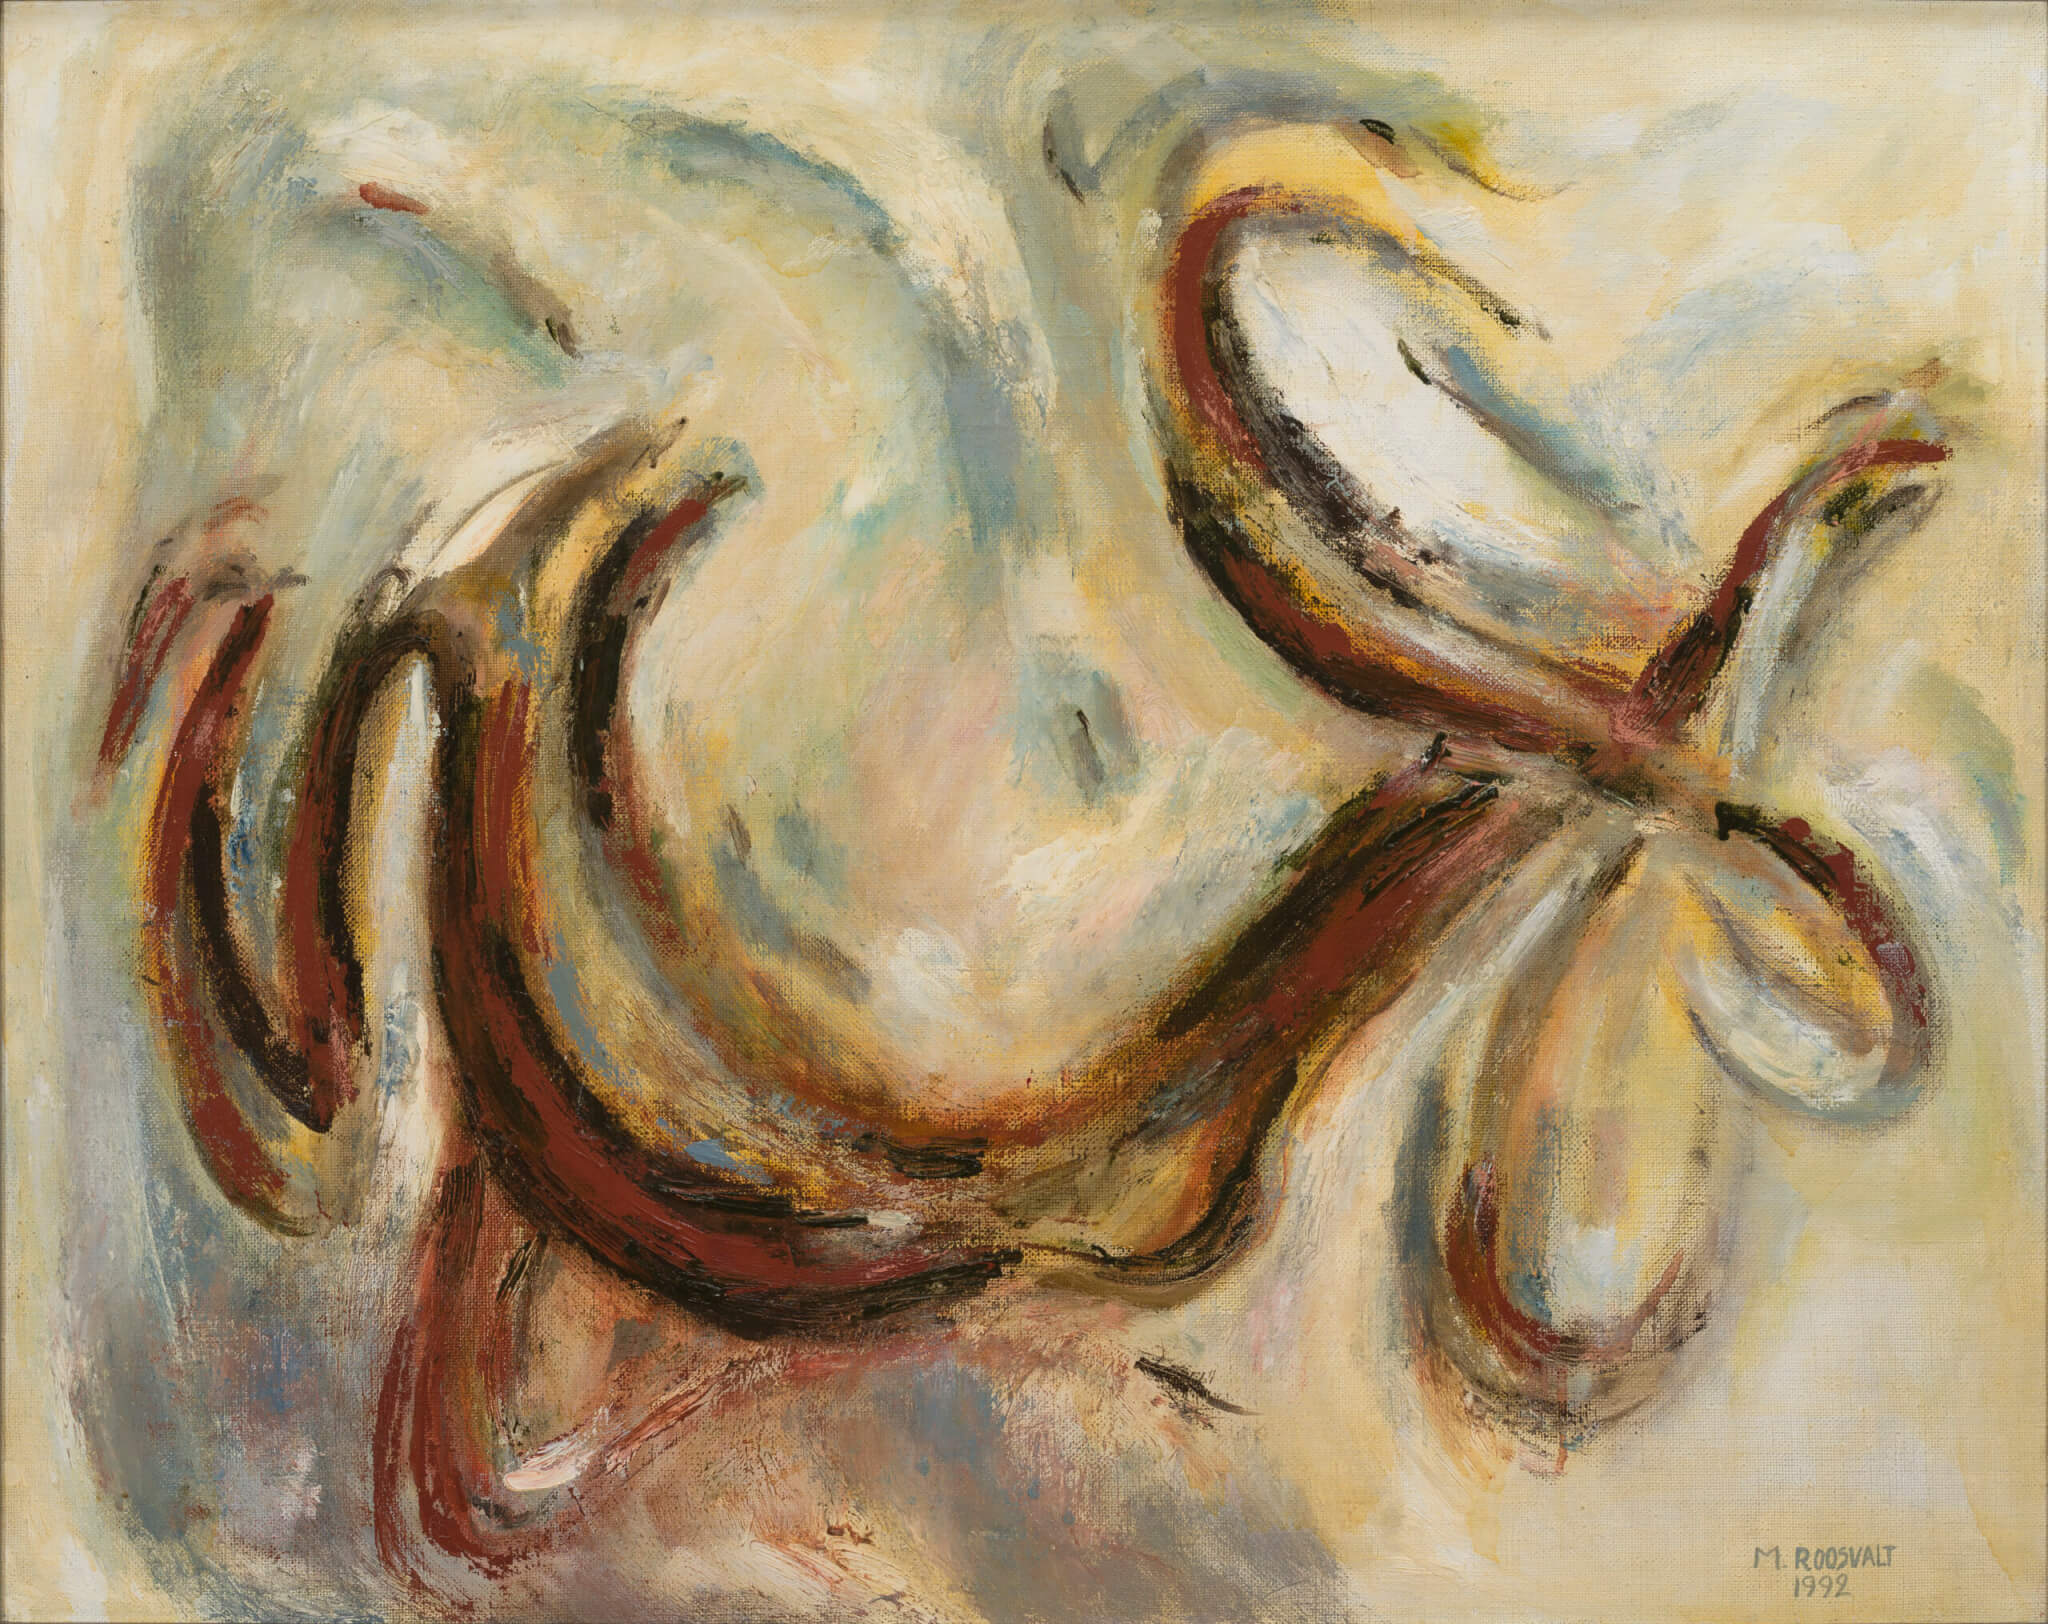 Mari Roosvalt “Sõlm”, 1992. 77 x 97 cm.